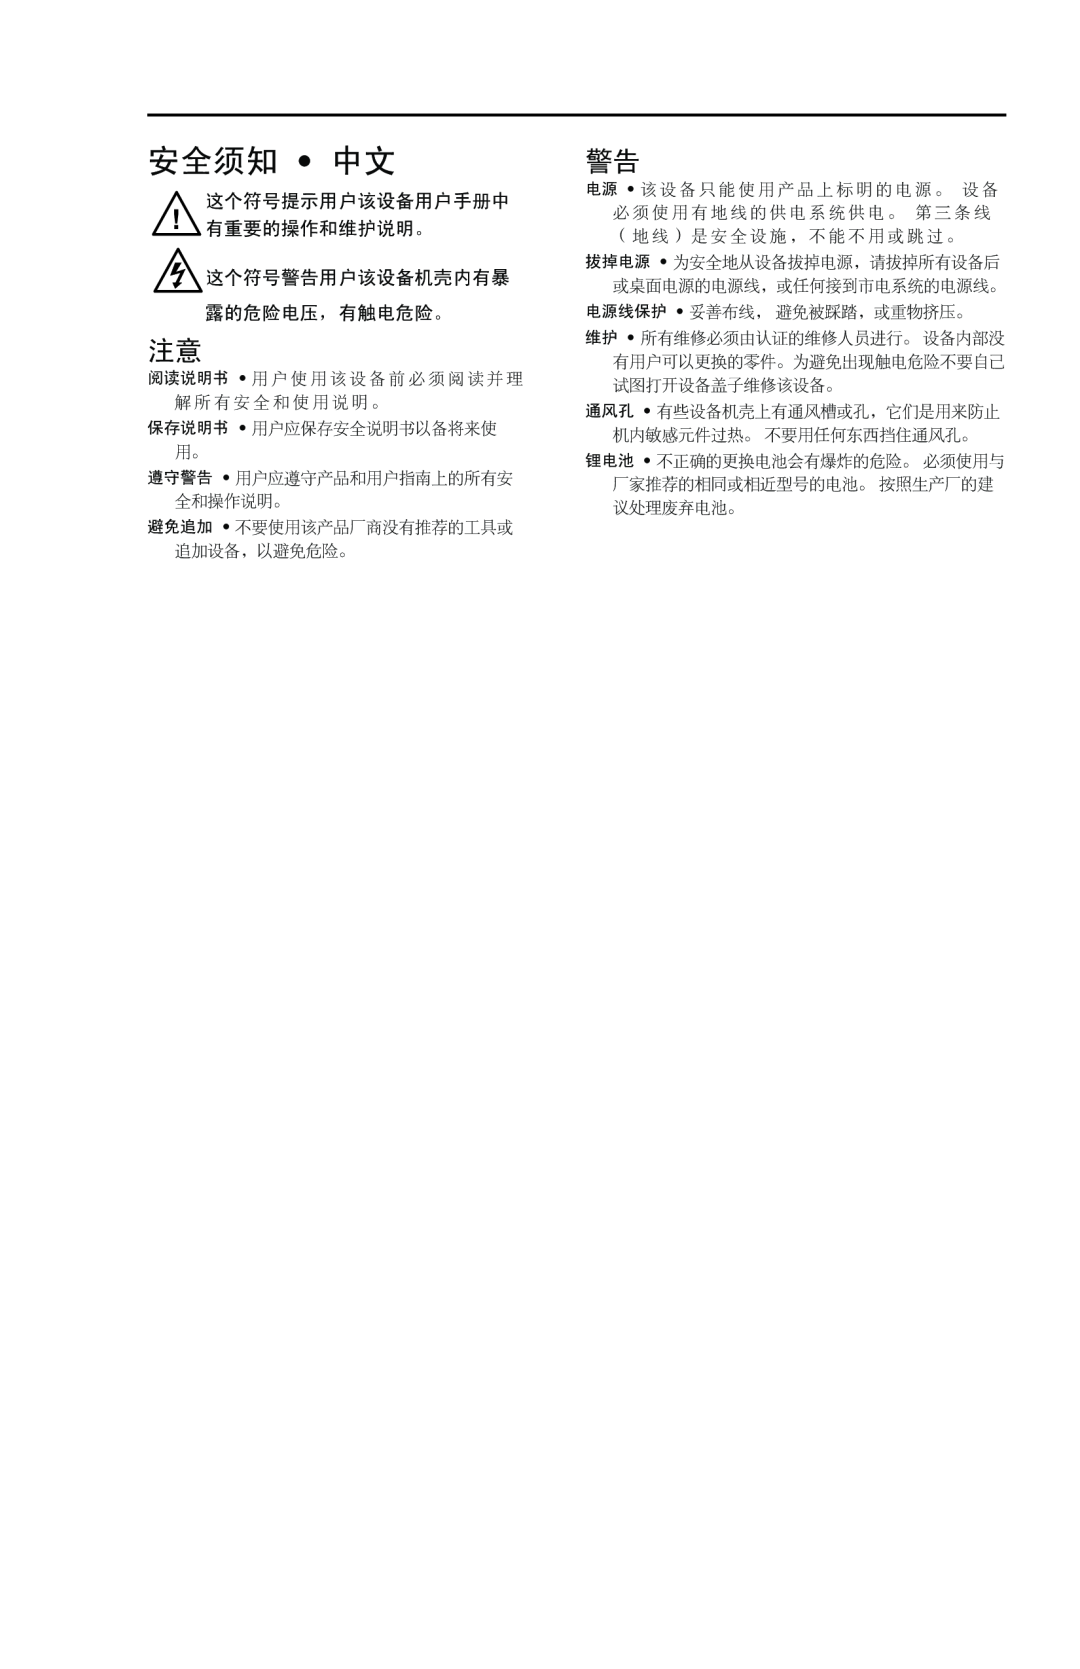 Extron electronic MSW 4V SDI rs user manual 安全须知 中文, 这个符号提示用户该设备用户手册中 有重要的操作和维护说明。 这个符号警告用户该设备机壳内有暴 露的危险电压，有触电危险。 